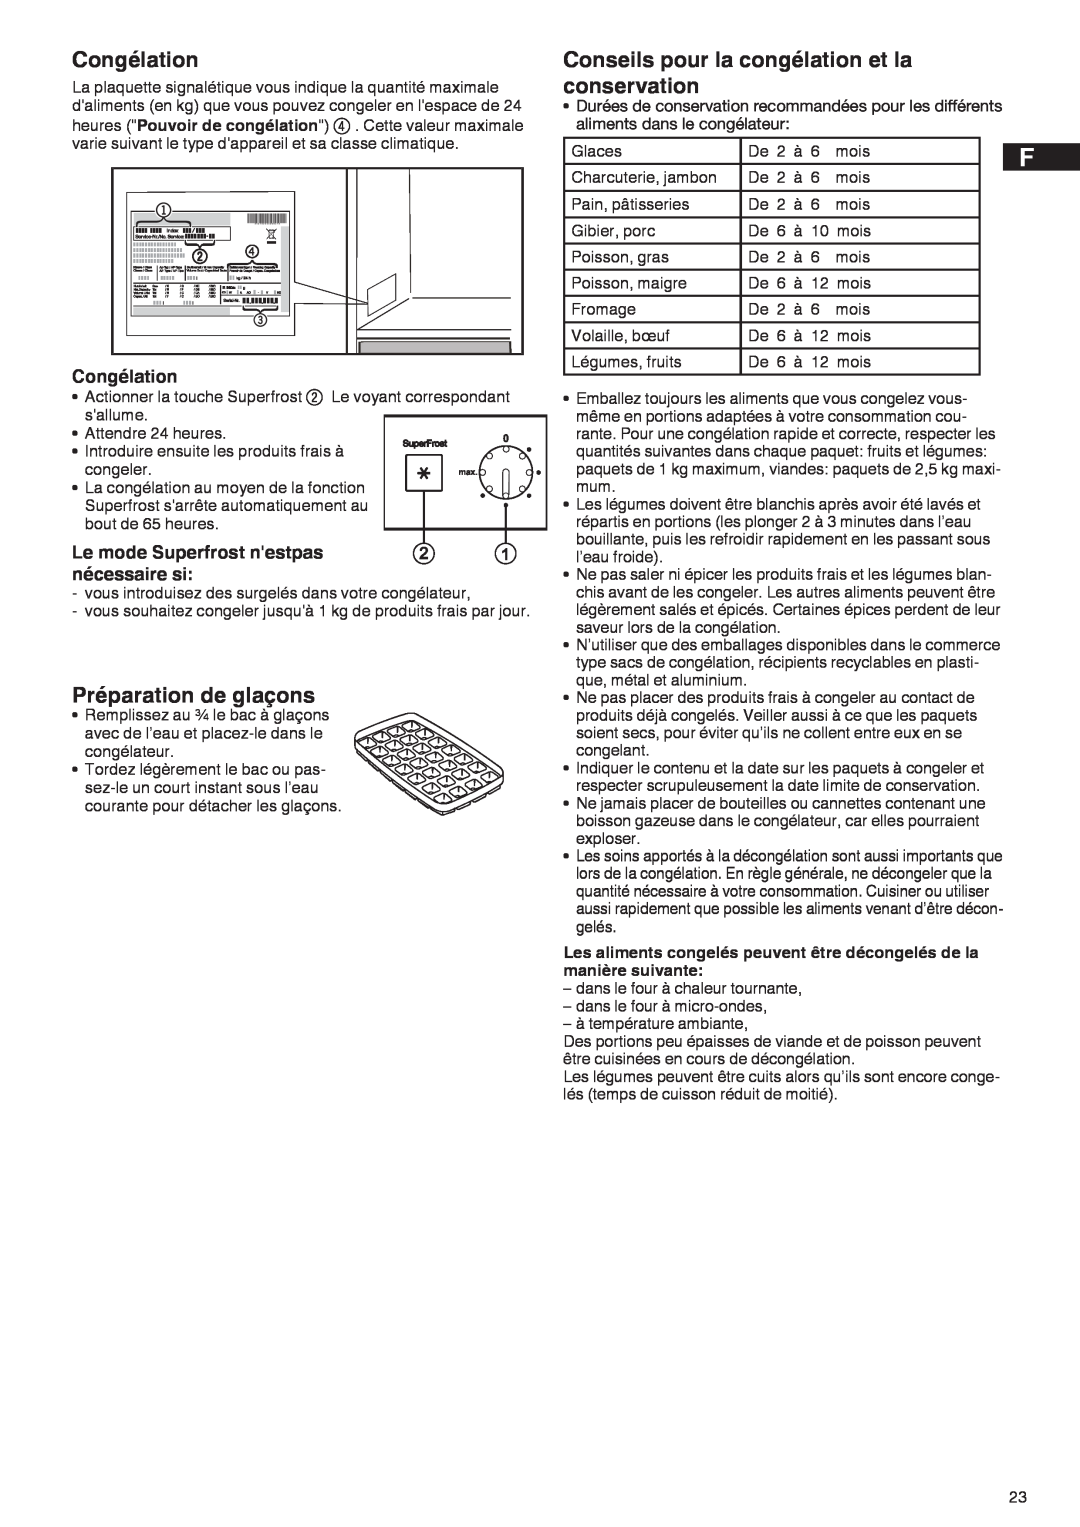 Liebherr 7081 885-01 manual Congélation, Préparation de glaçons, Conseils pour la congélation et la conservation 